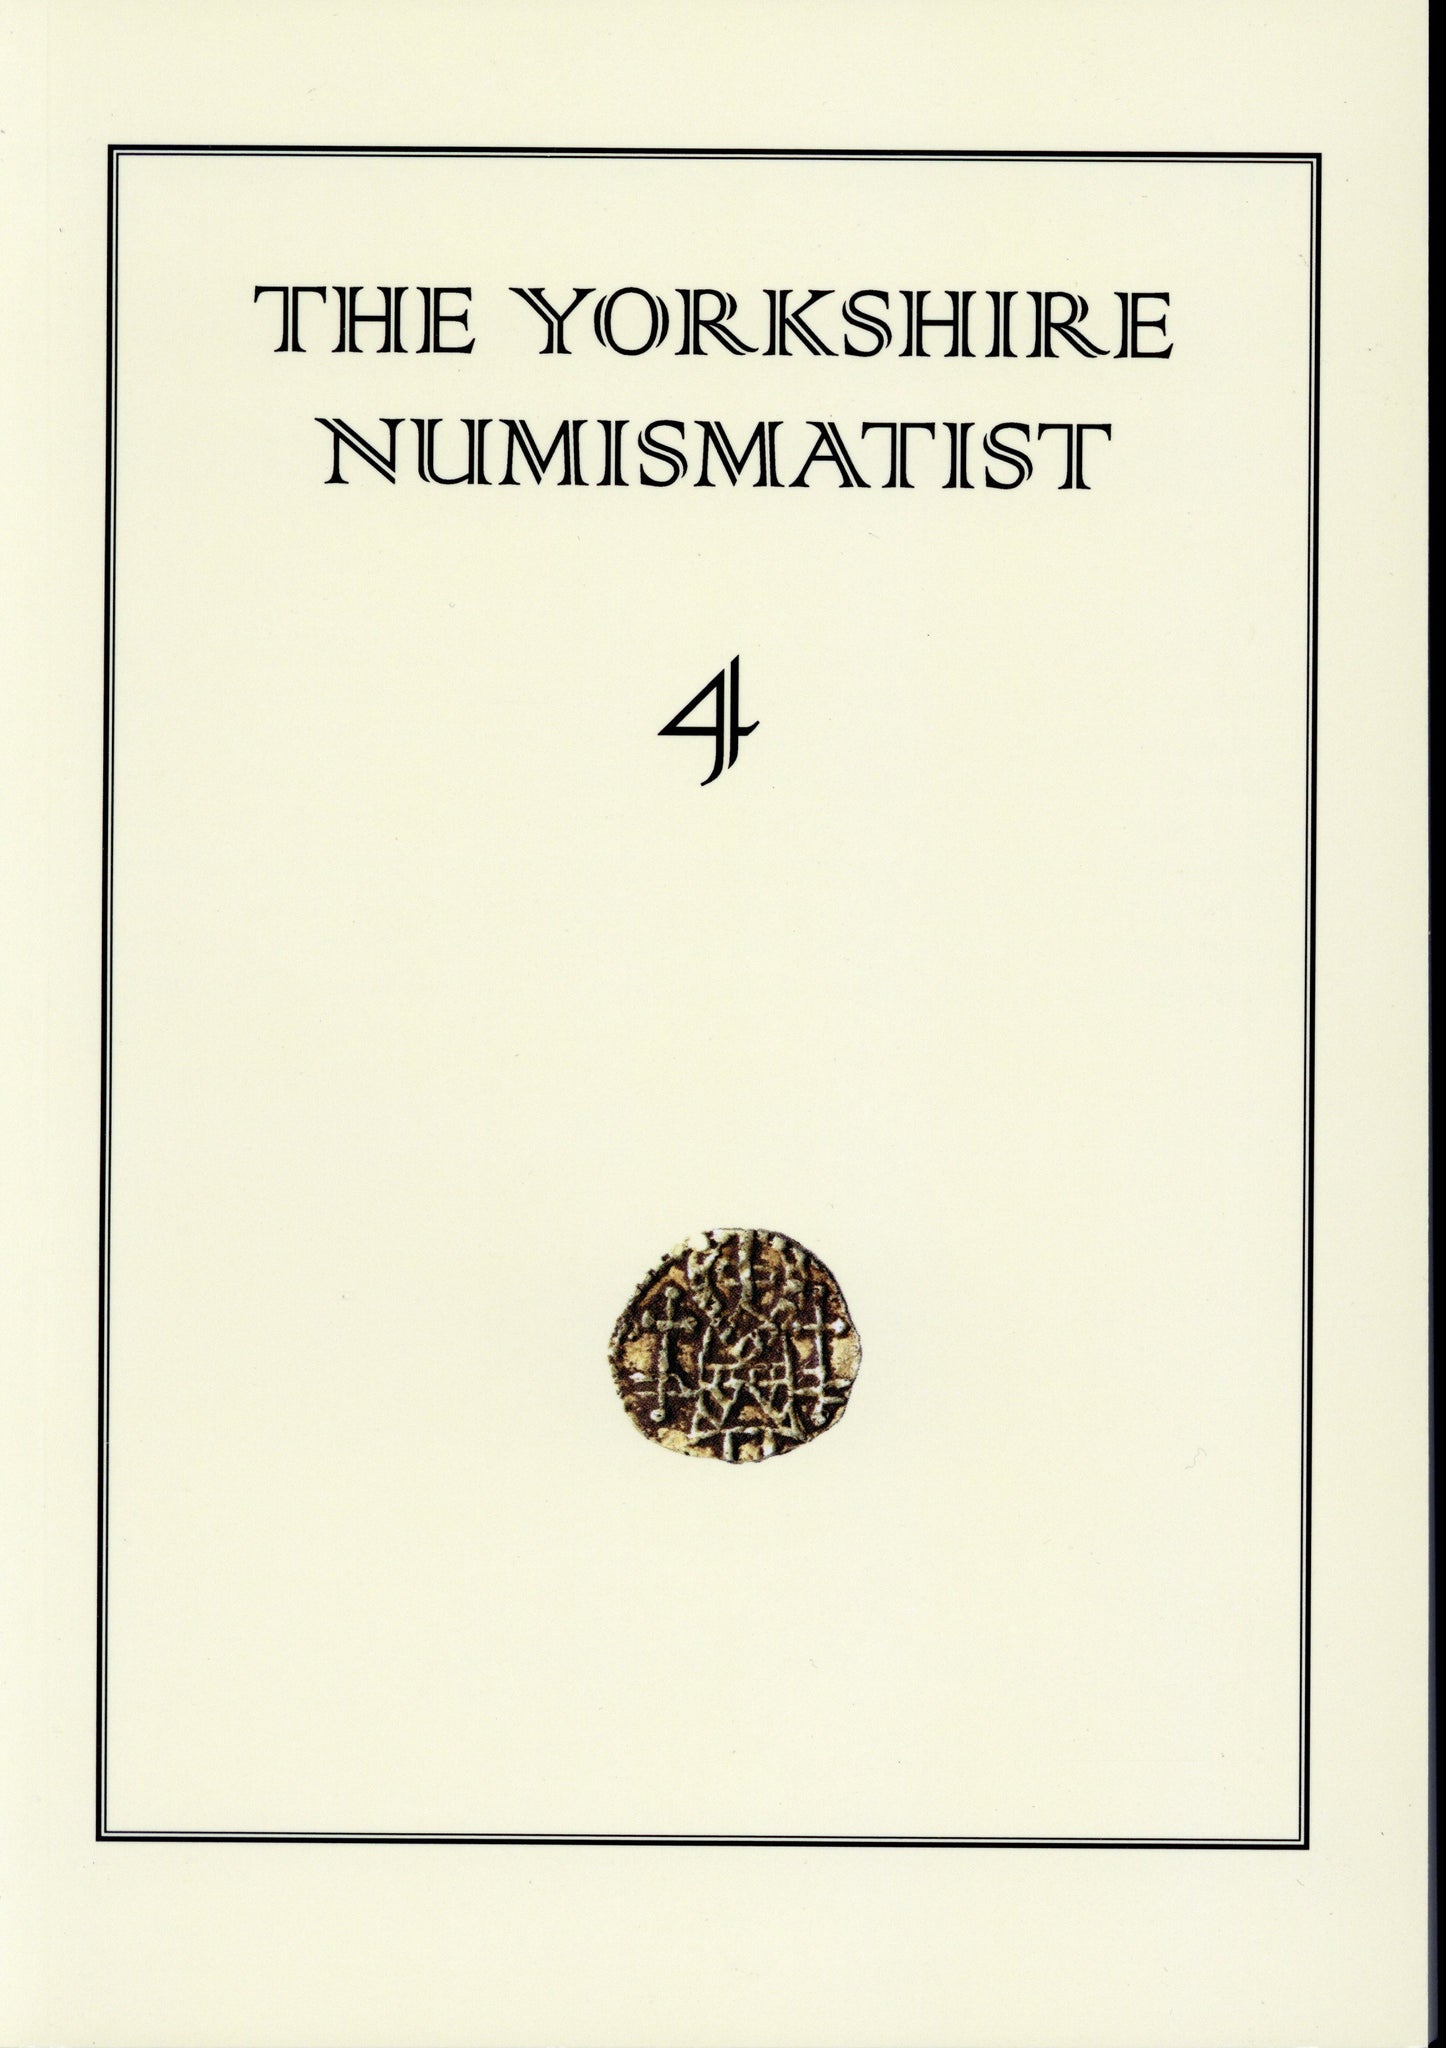 The Yorkshire Numismatist 4 by Abramson, T. (et al)